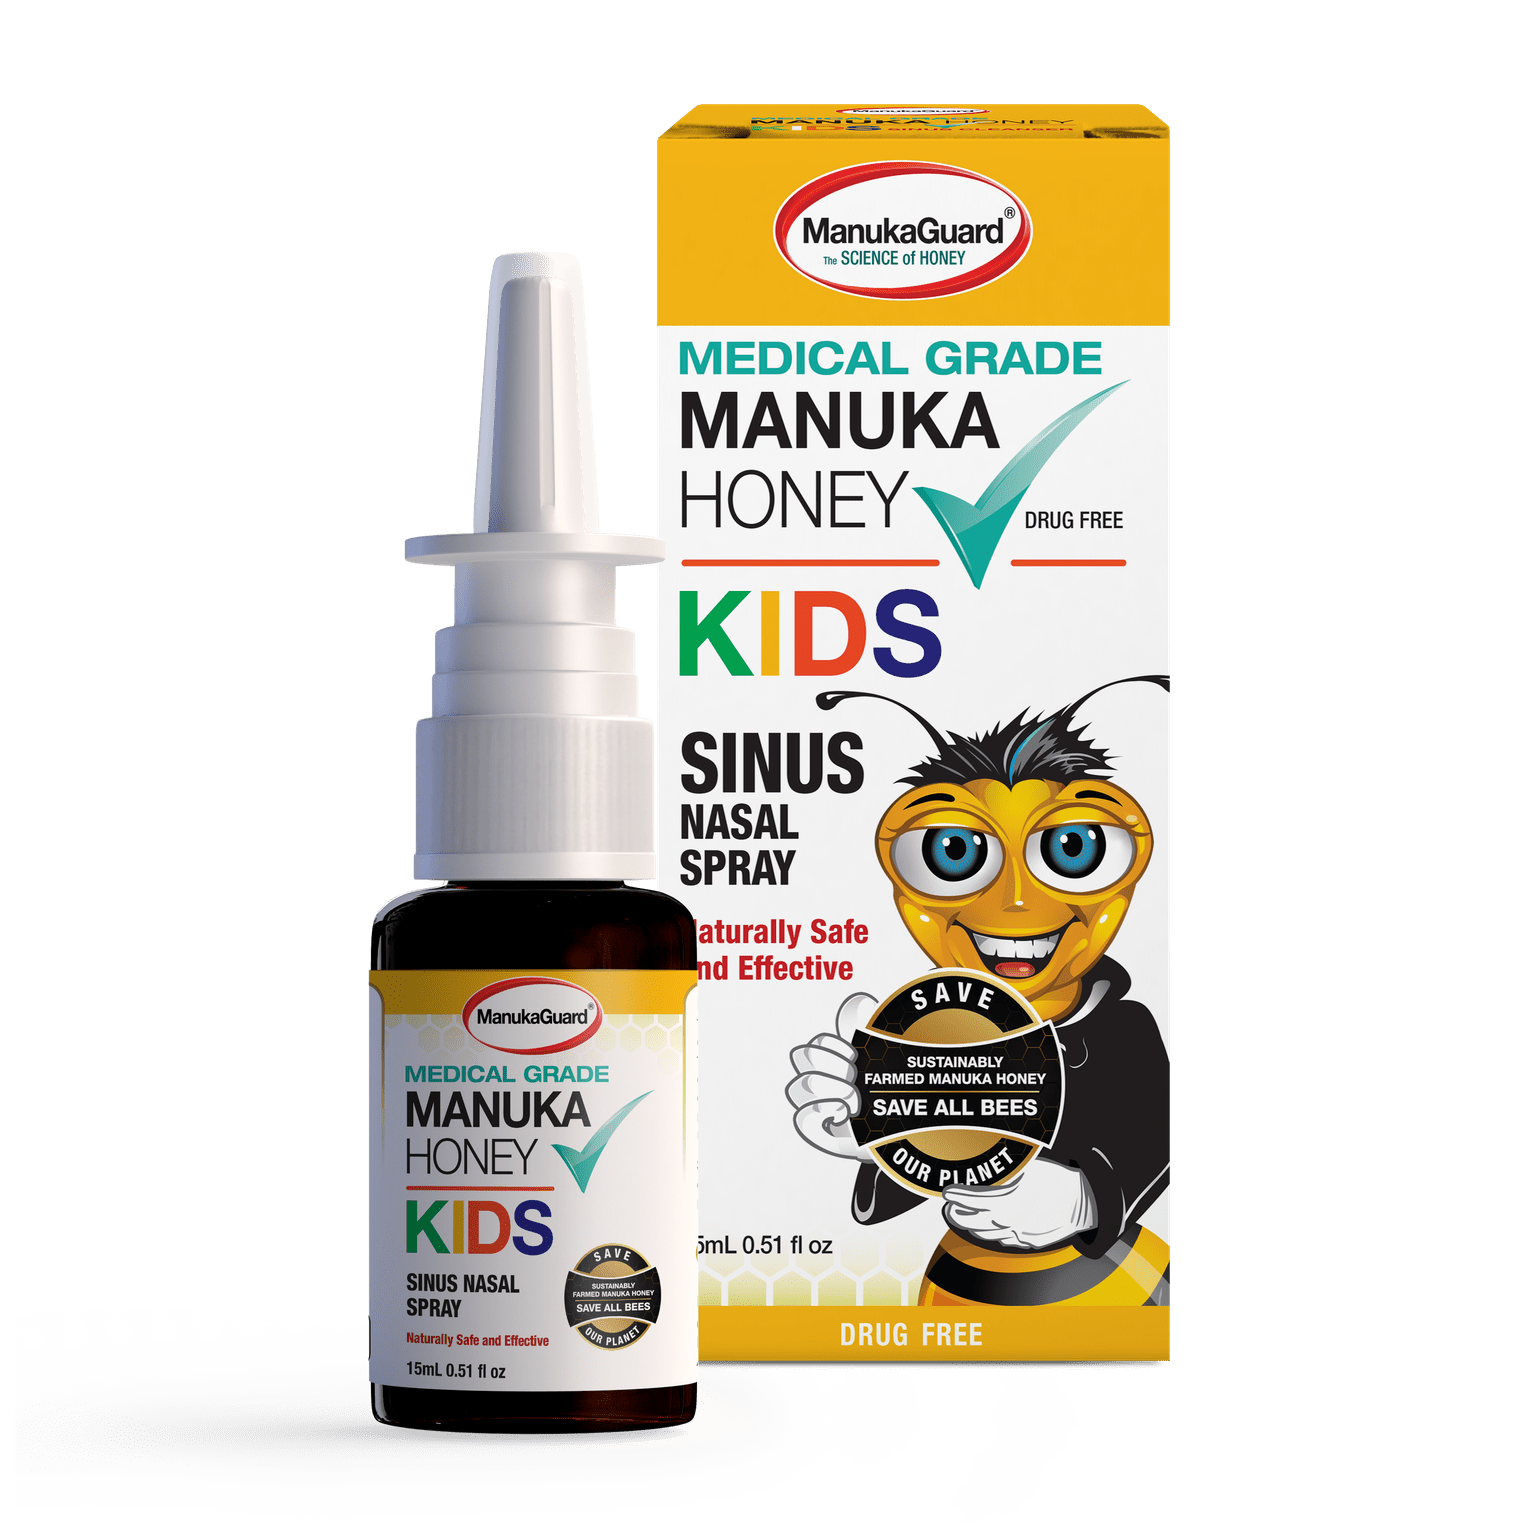 Kid's Sinus Nasal Spray